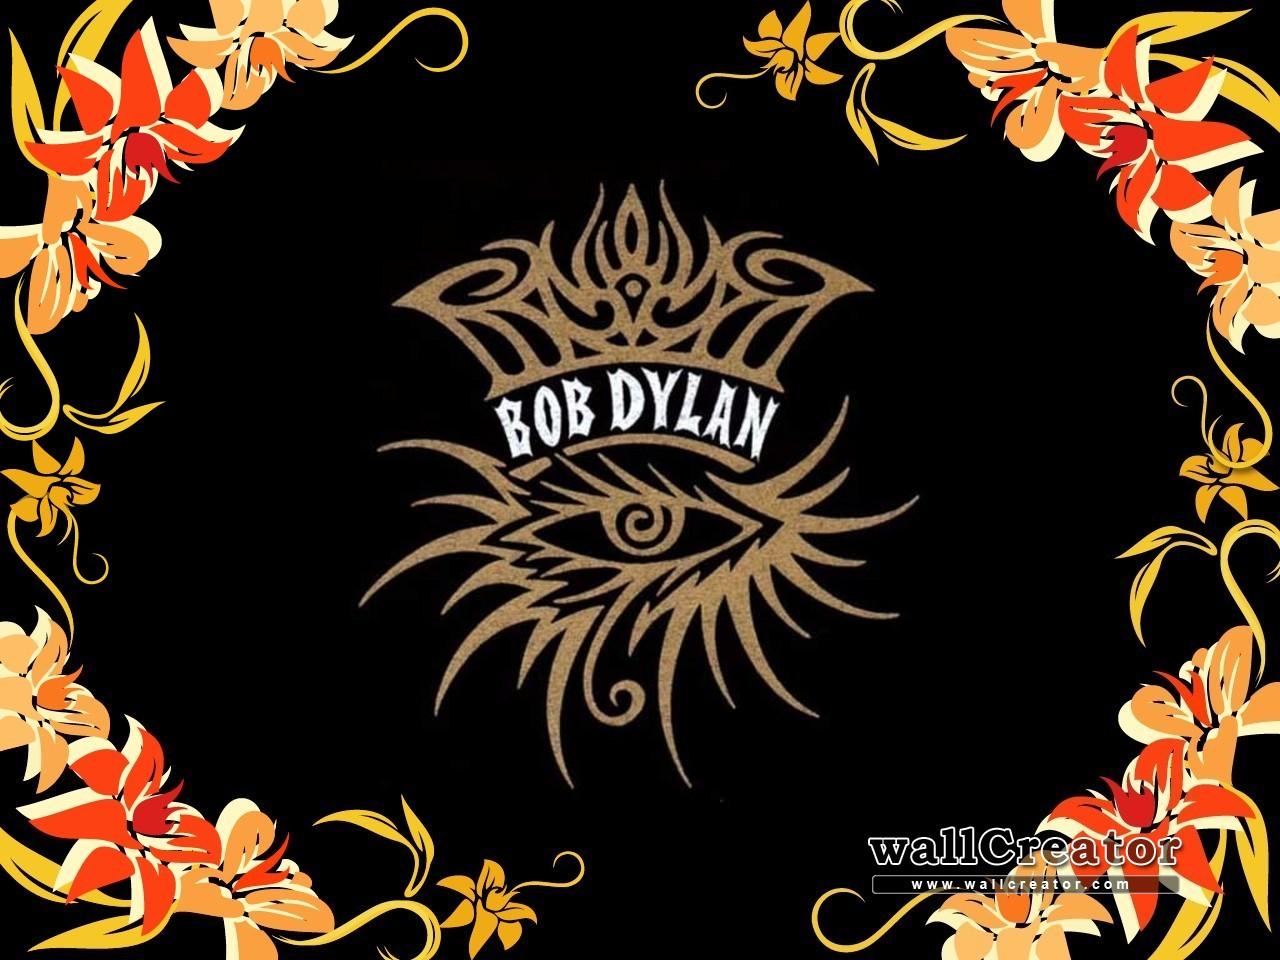 Bob Dylan Logo - Bob Dylan NET Wallpaper - 1280 / 1024 Wallpaper